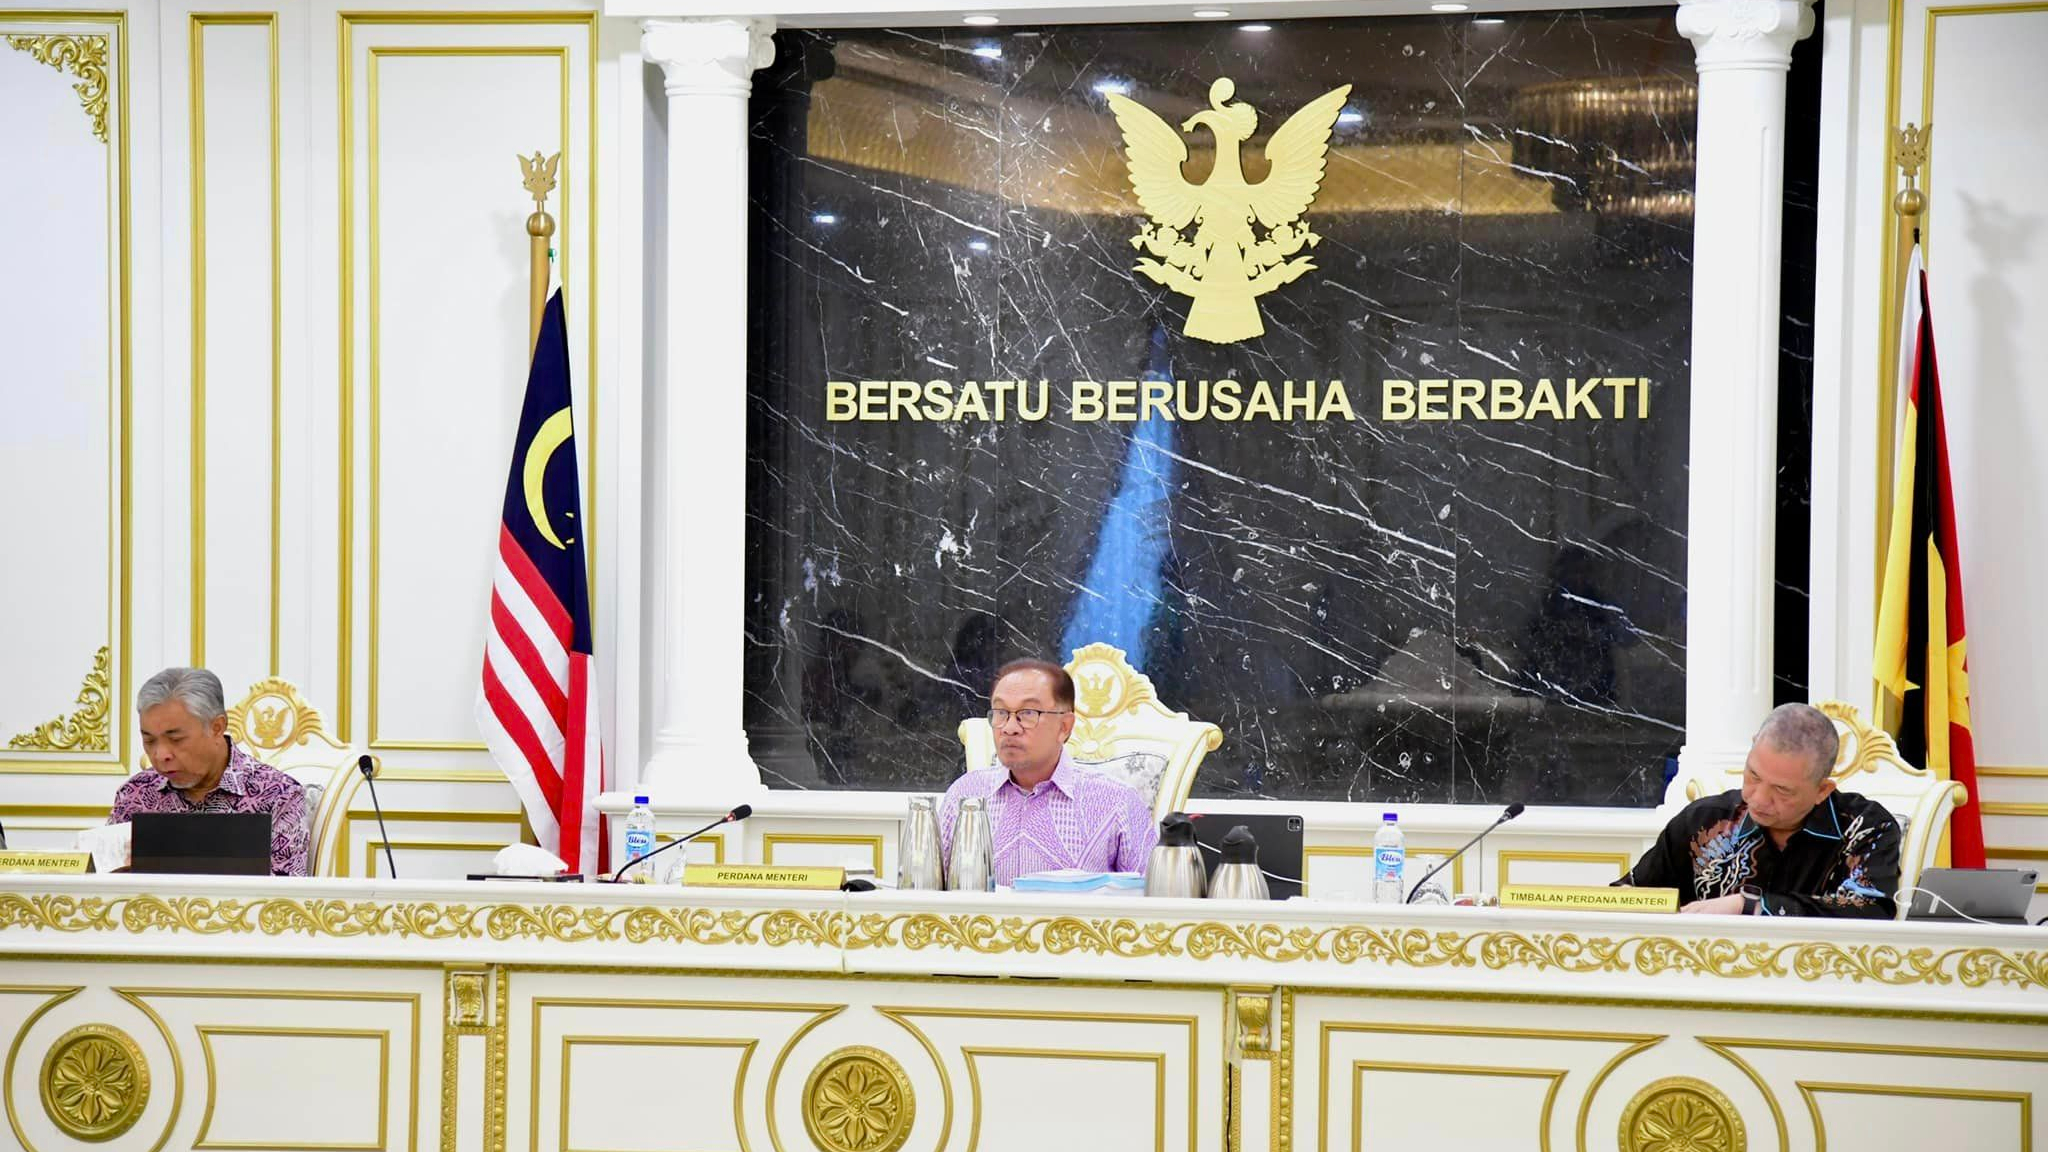 Anwar pengerusikan mesyuarat Jemaah Menteri buat pertama kali di Sarawak